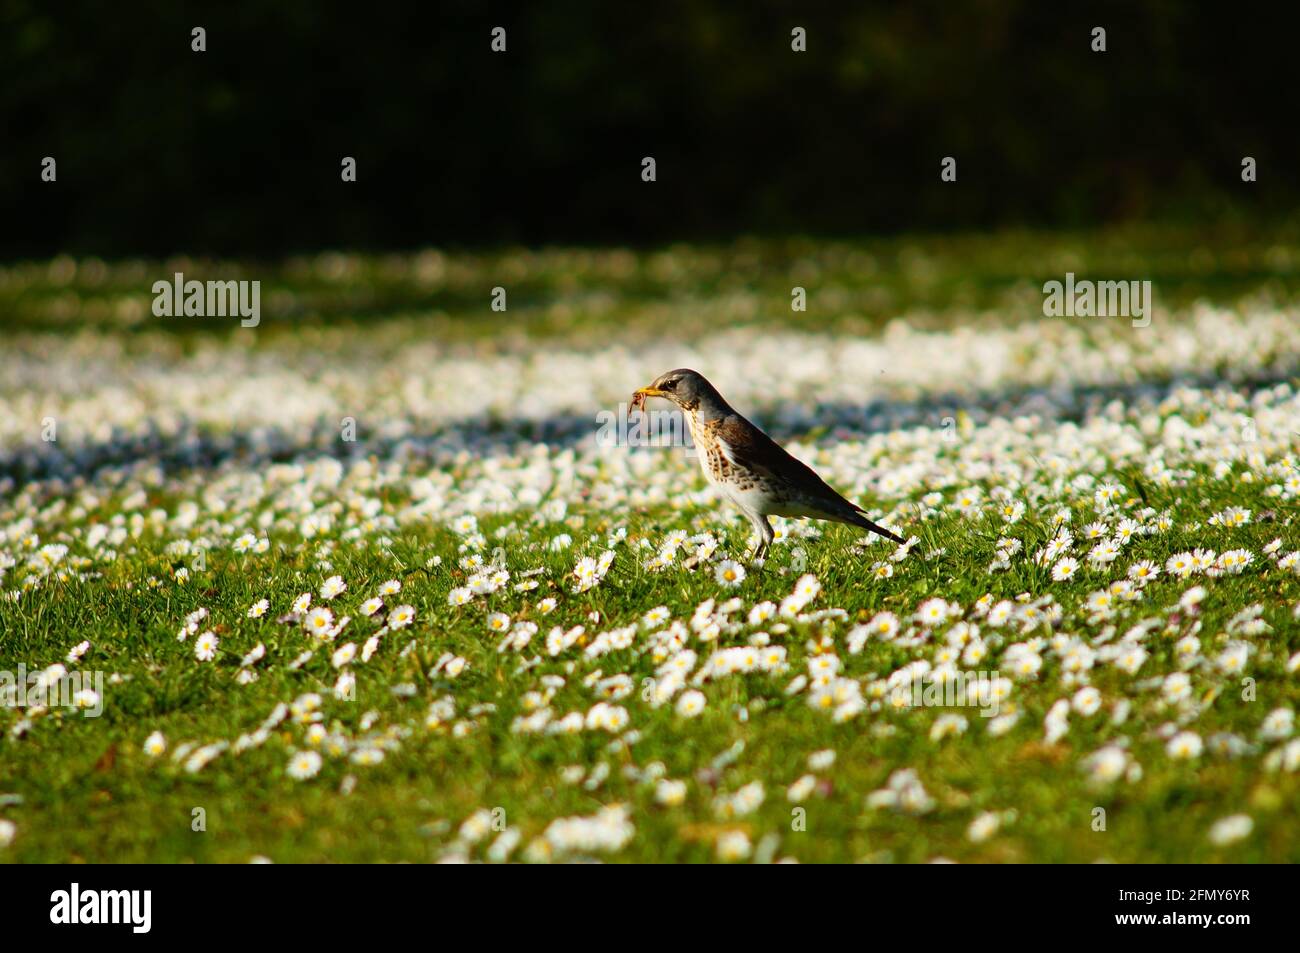 A fieldfare in a daisy meadow. Stock Photo